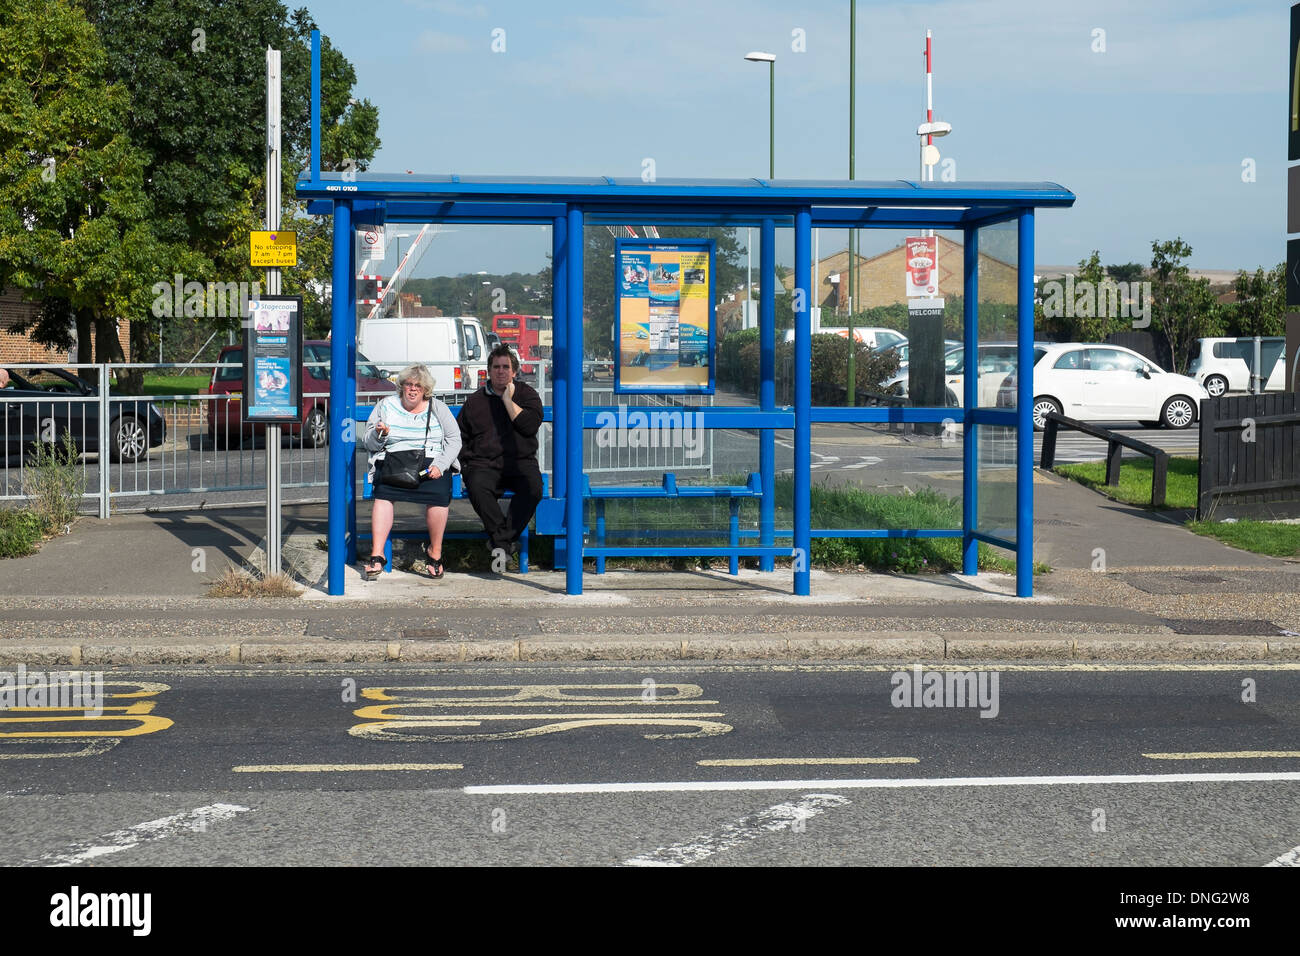 2 personnes en attente d'un arrêt de bus Banque D'Images